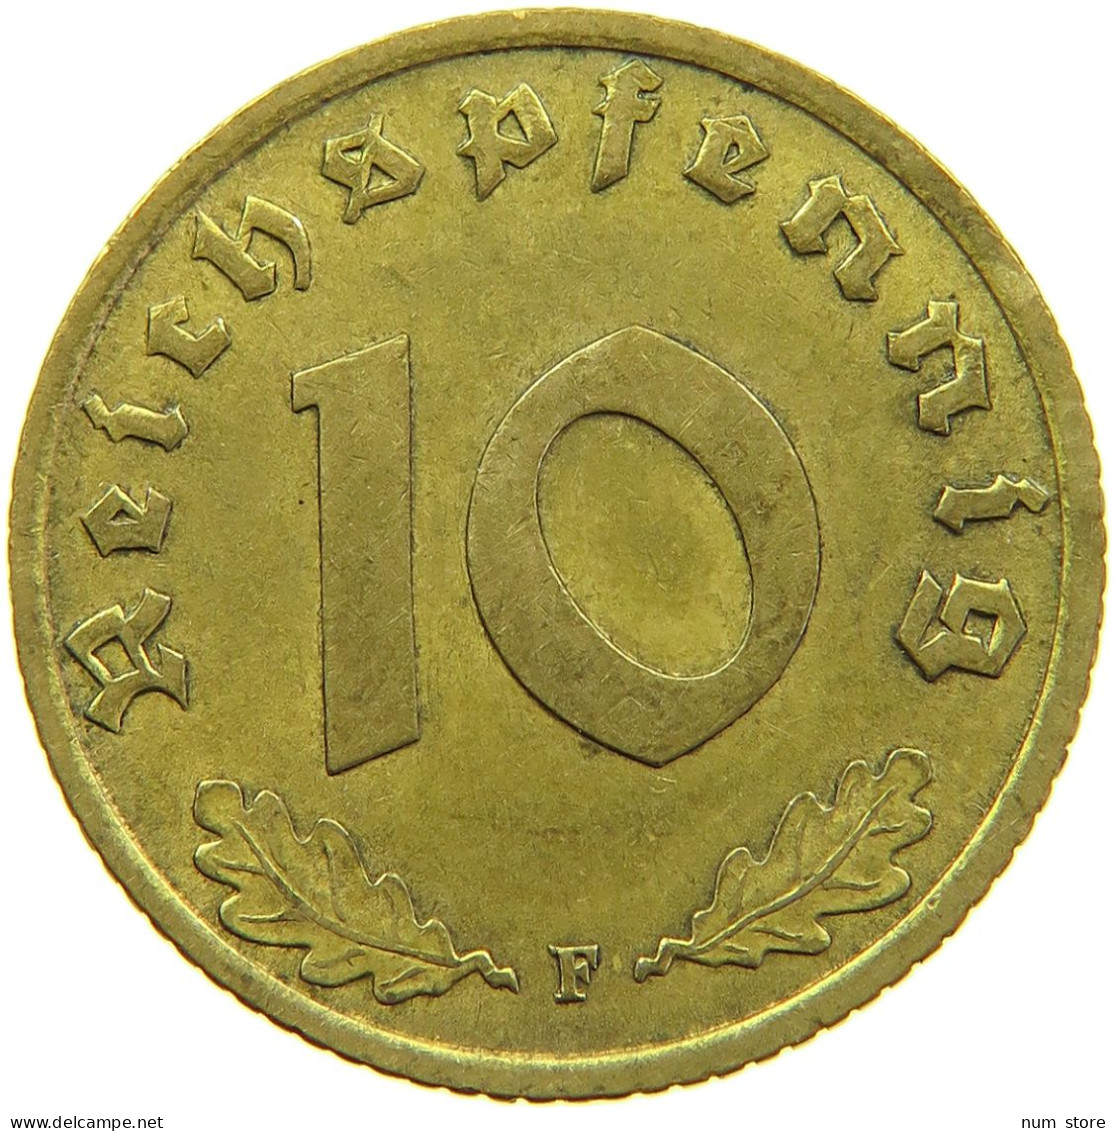 GERMANY 10 REICHSPFENNIG 1939 F #s095 0163 - 10 Reichspfennig